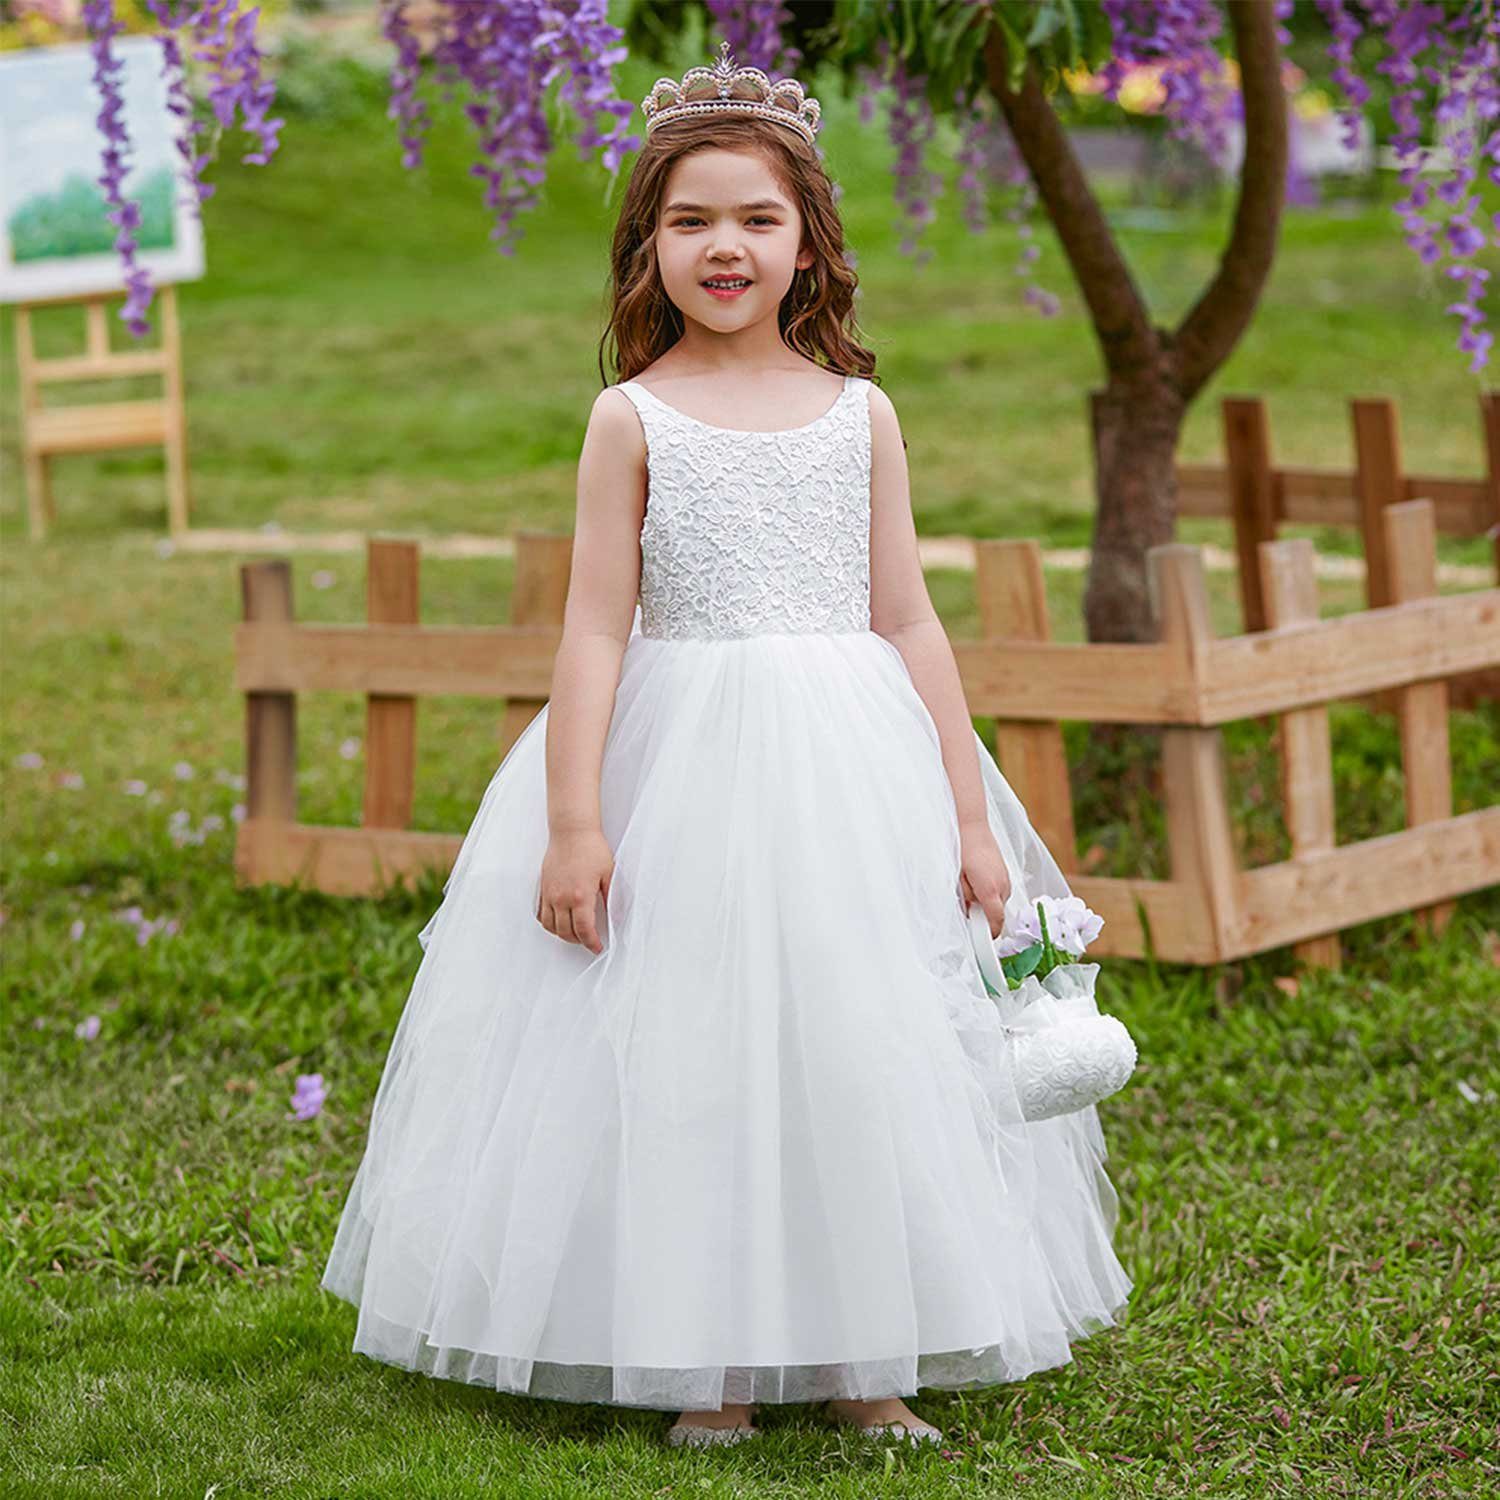 Prinzessin Daisred Partykleid Weiß Kleider Mädchenkleider Kleidung Performance